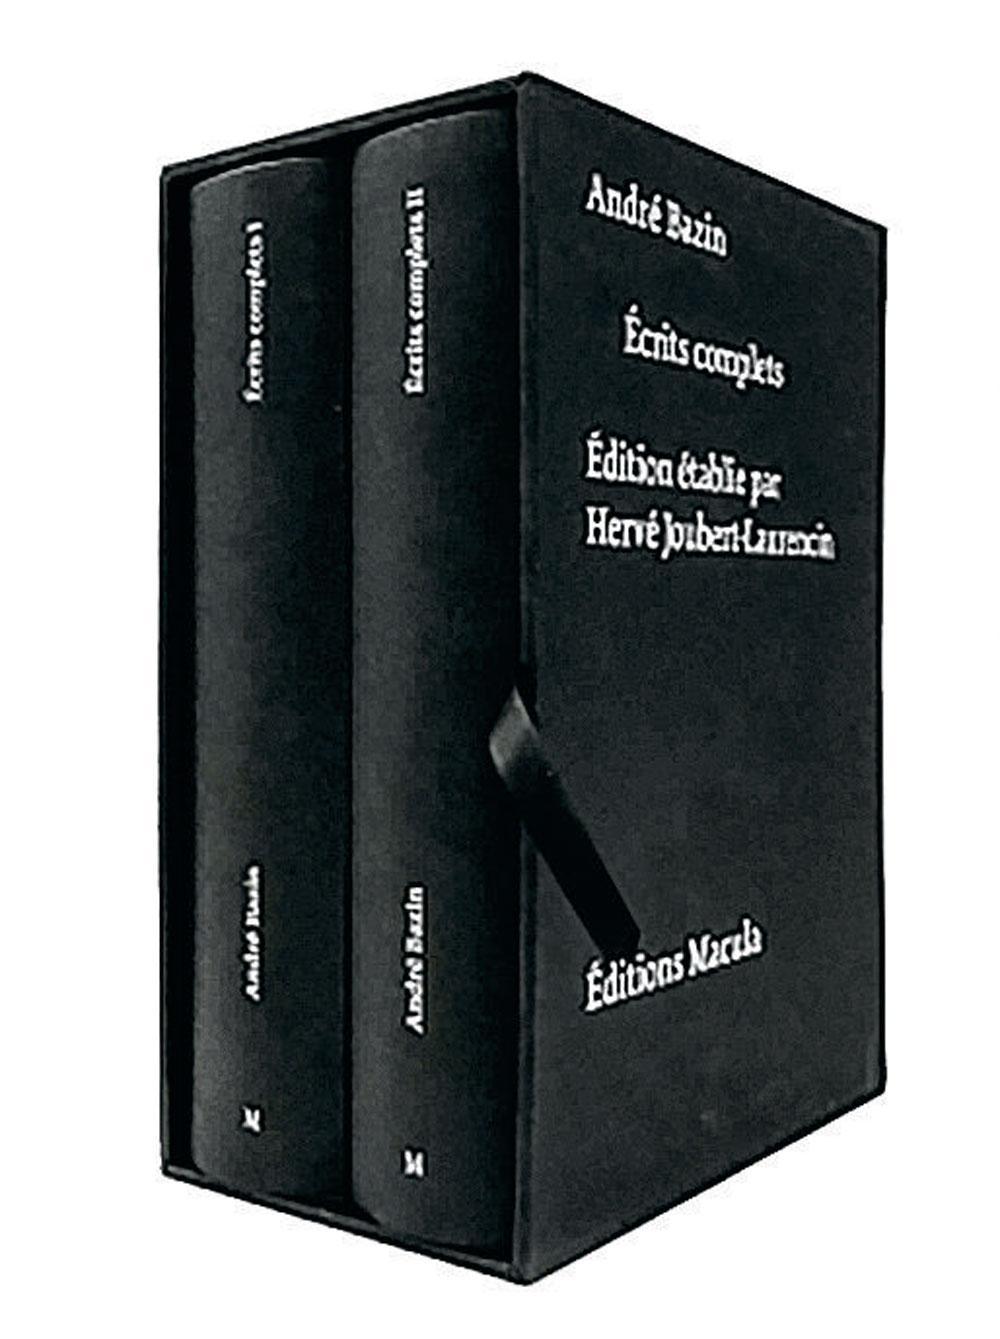 André Bazin, Ecrits complets, édition établie par Hervé Joubert-Laurencin, 2 vol. sous coffret, Paris, Macula, 2 848 p.